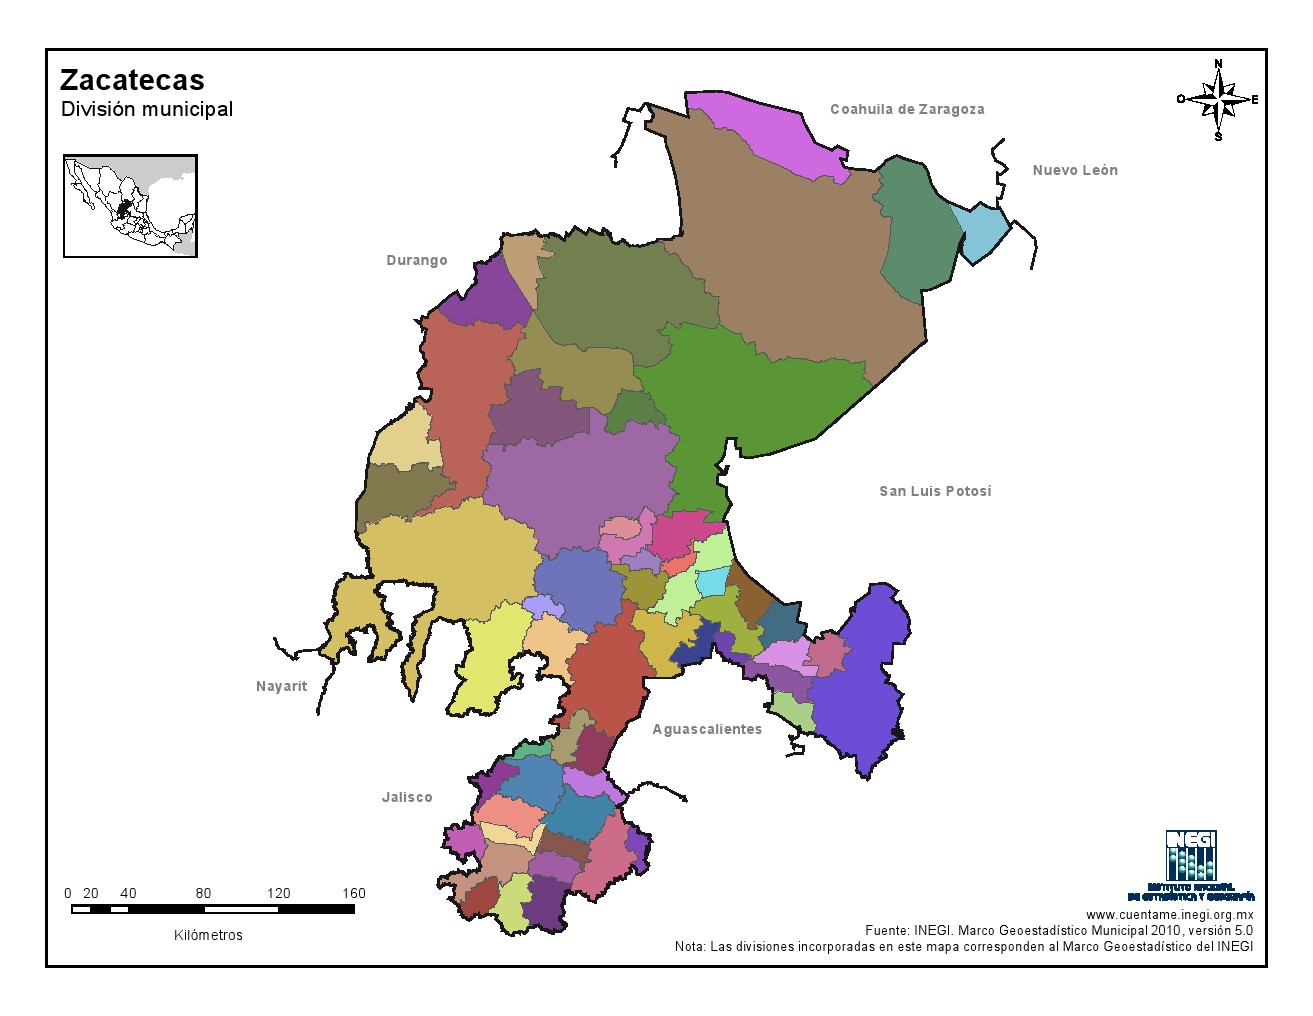 Mapa mudo de municipios de Zacatecas. INEGI de México